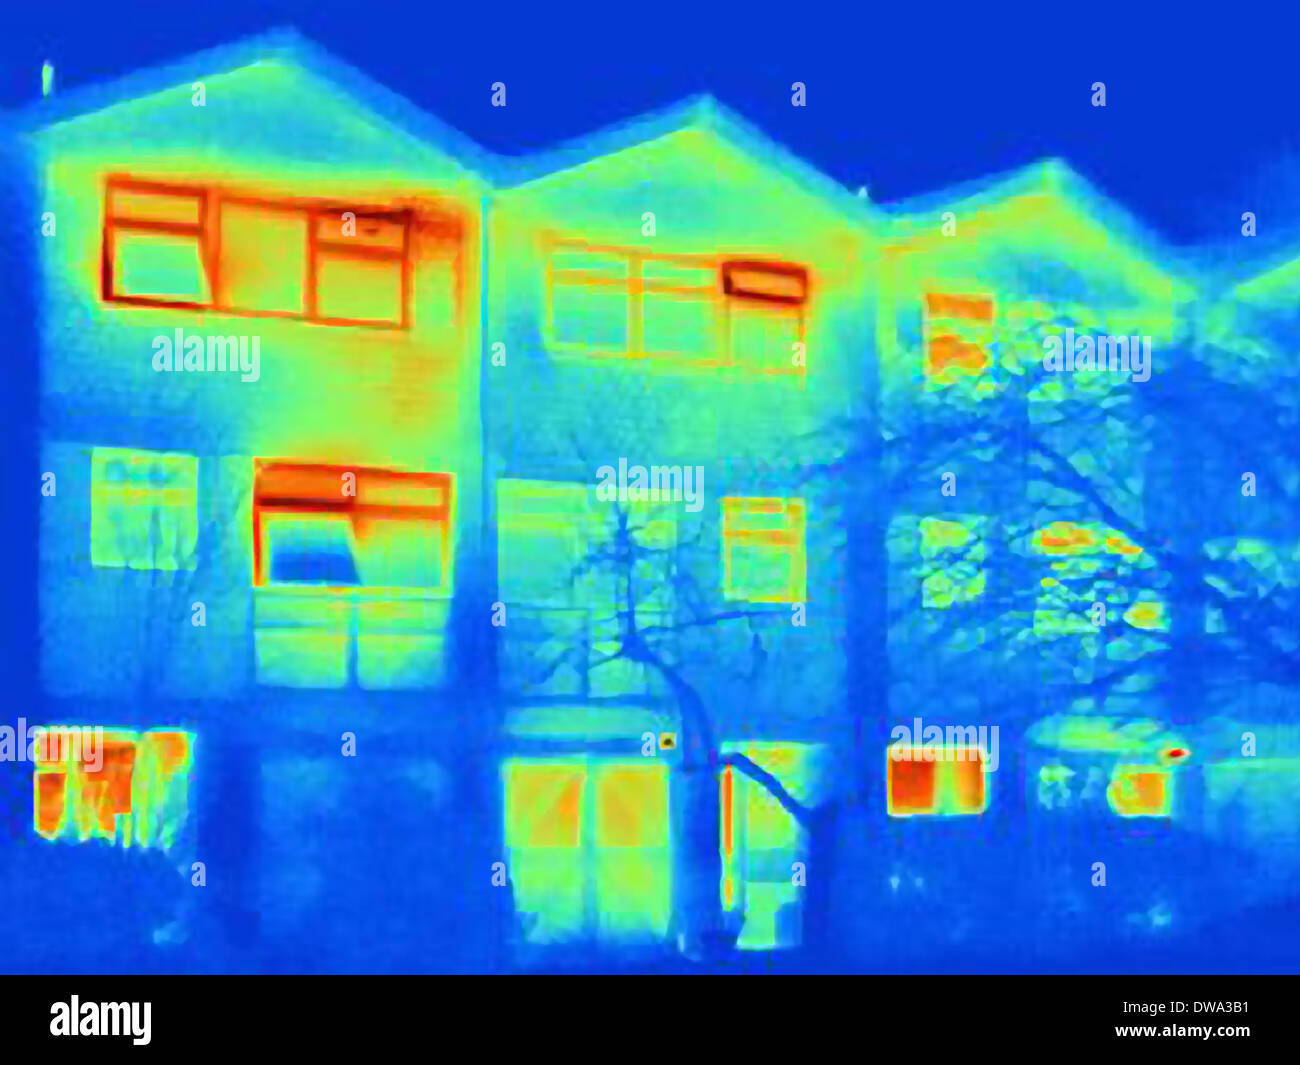 Image thermique de la maison, montrant une perte de chaleur par les fenêtres ouvertes Banque D'Images